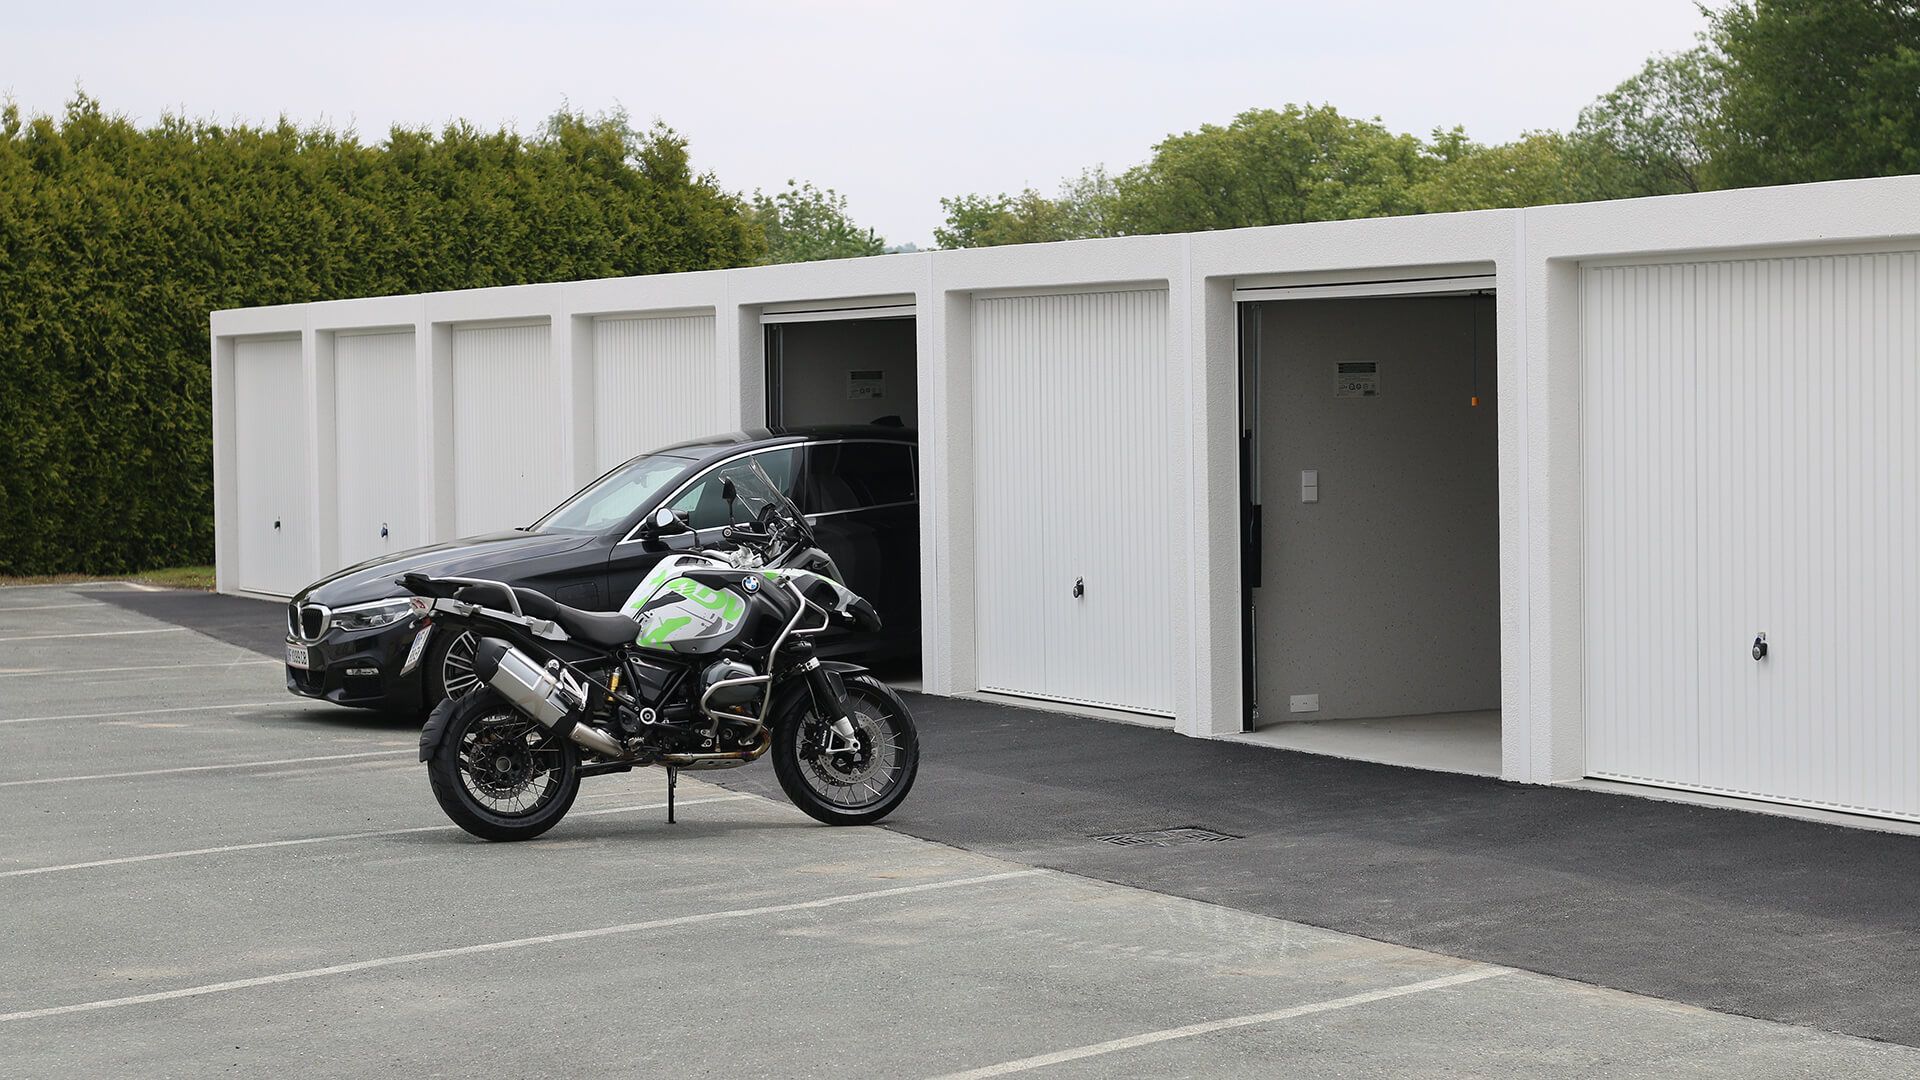 Unsere Garagen in Markt Allhau - ideal für Oldtimer, Motorrad, Autos und mehr! 